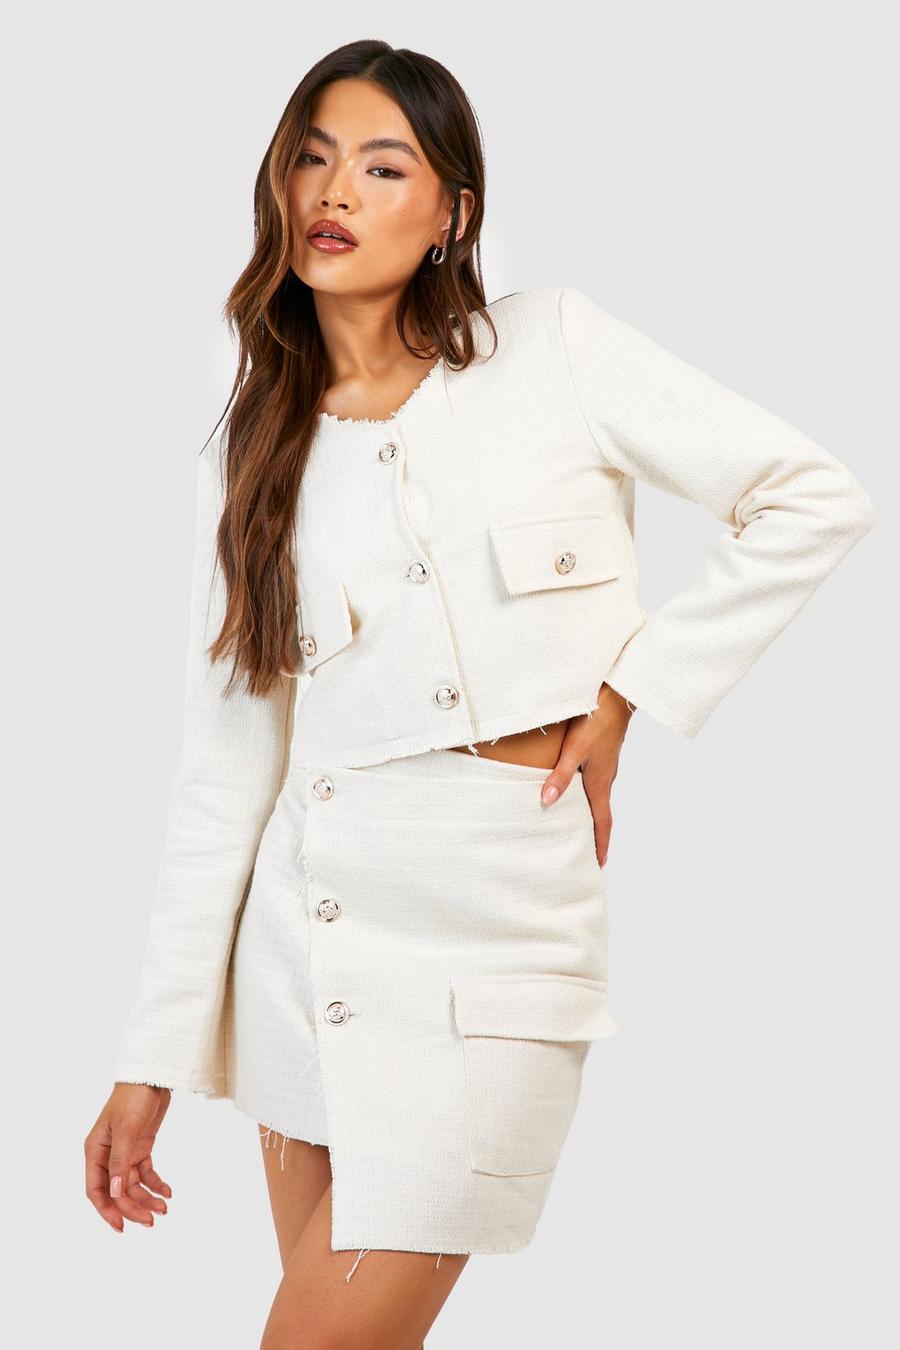 Mini-jupe asymétrique boutonnée, Cream blanc